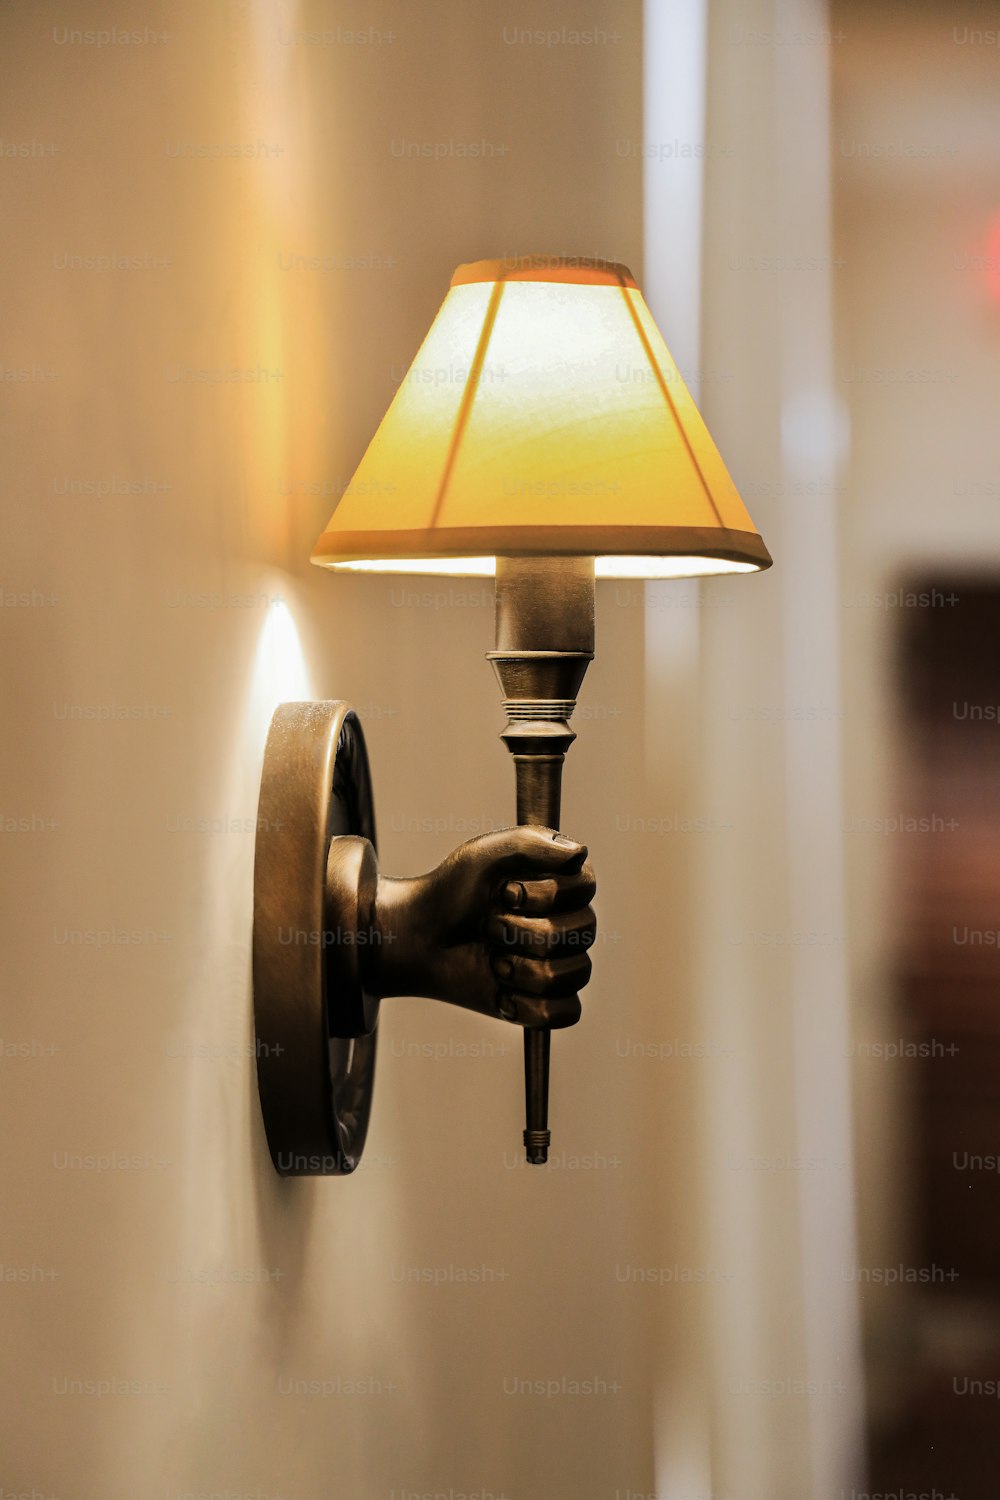 eine Lampe, die sich an einer Wand neben einer Lampe befindet